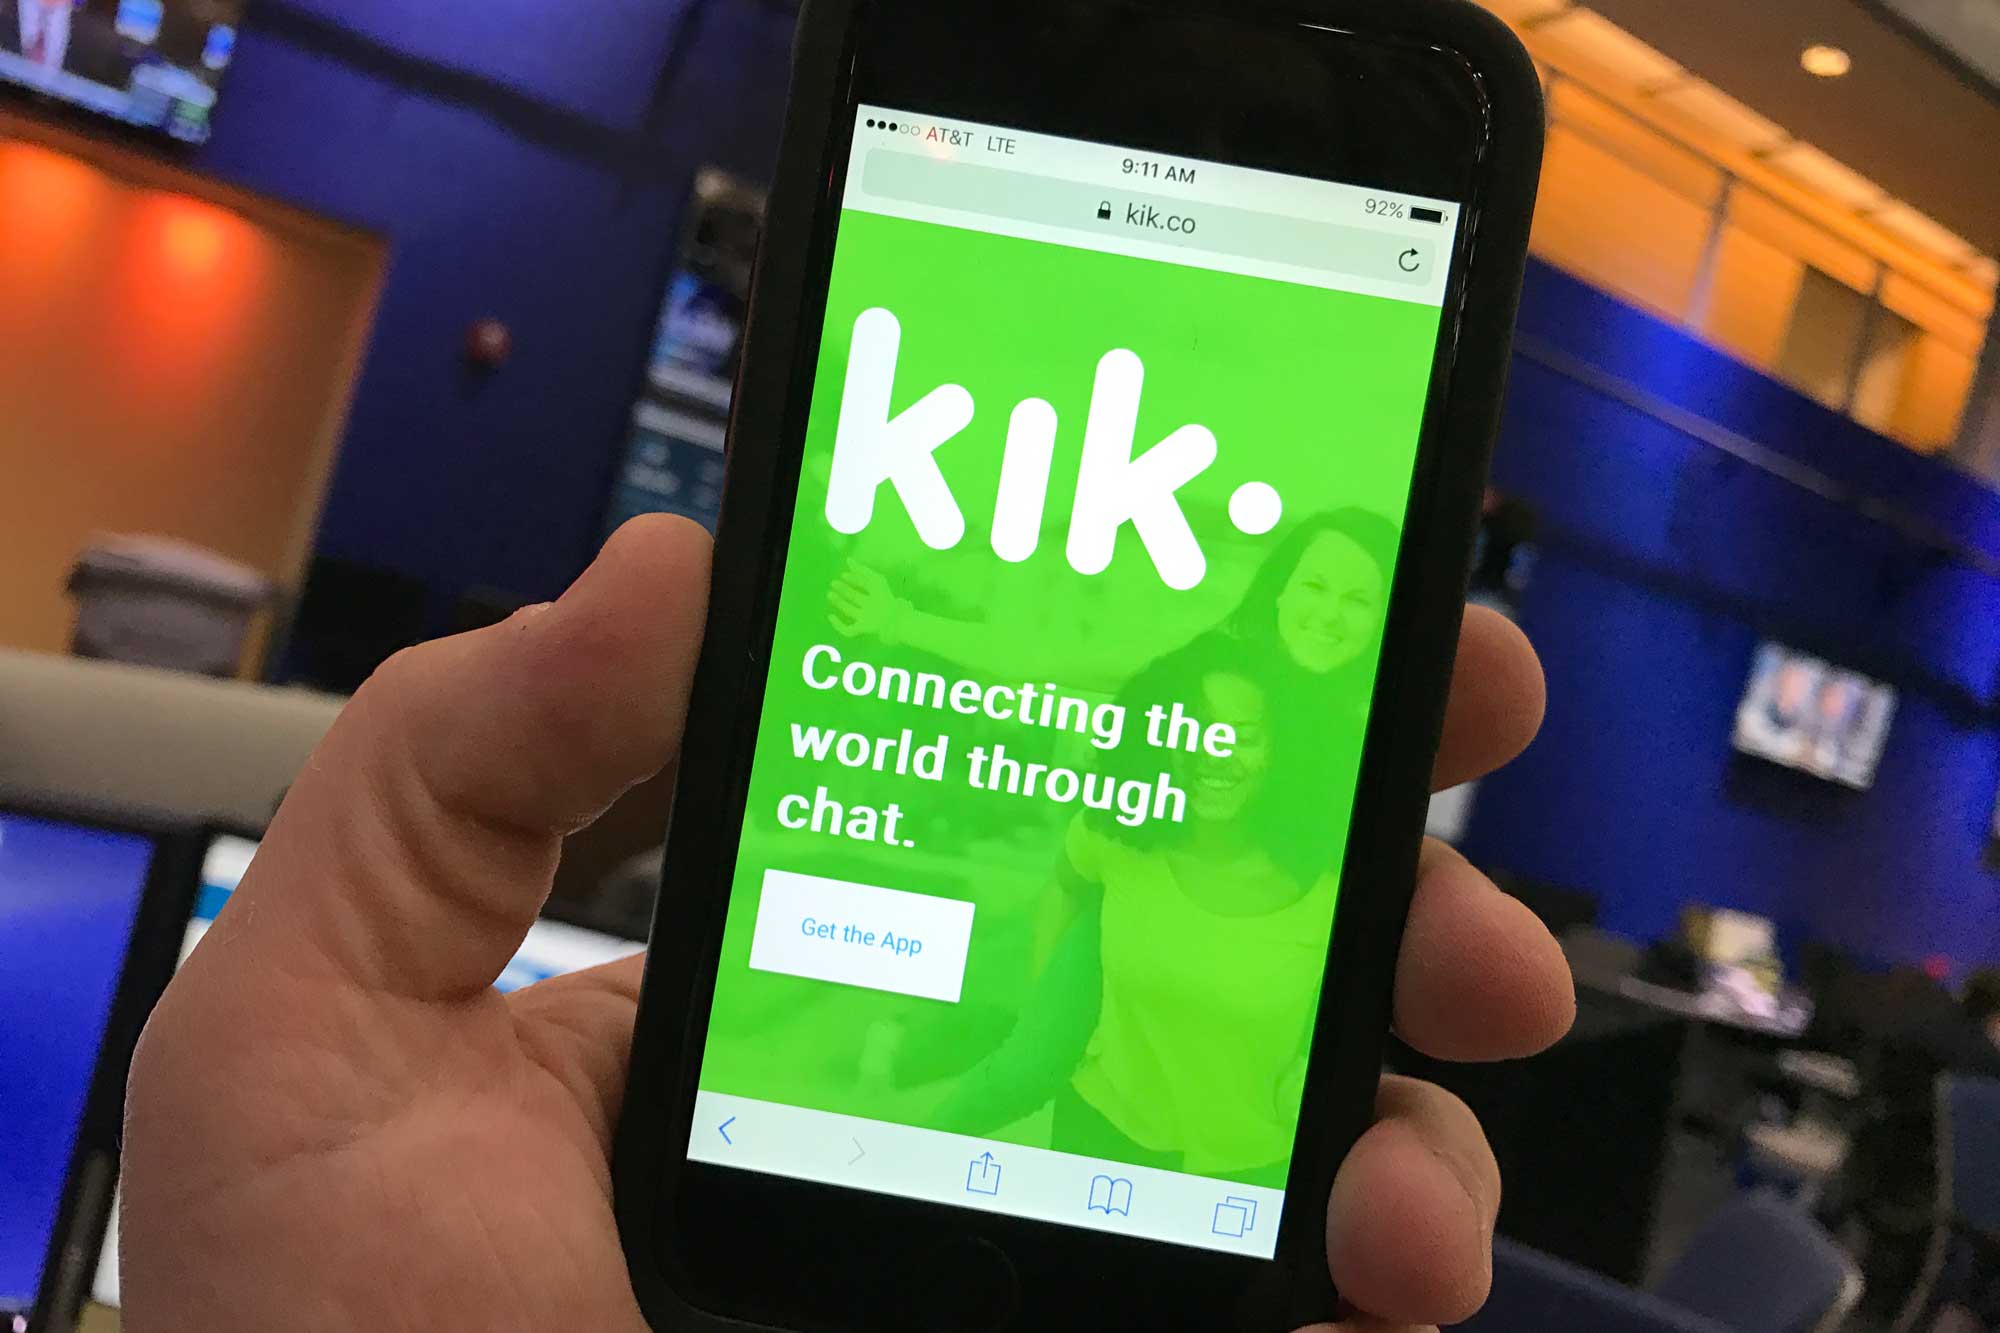 kik replacement apps like kik